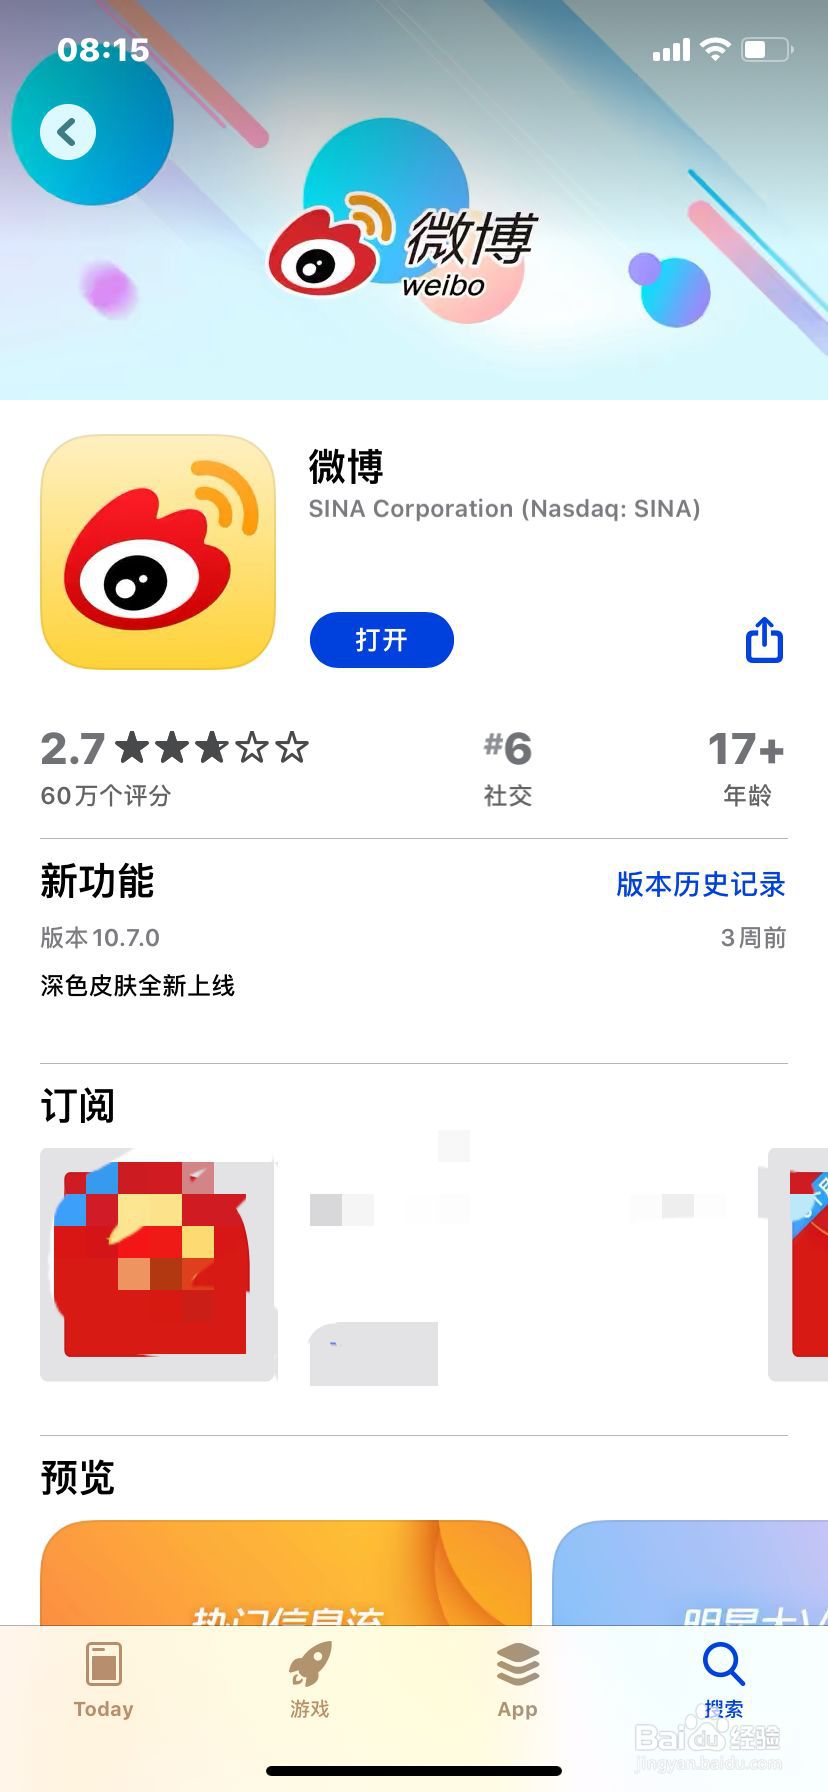 <b>iPhone微博语言如何设置为繁体中文</b>